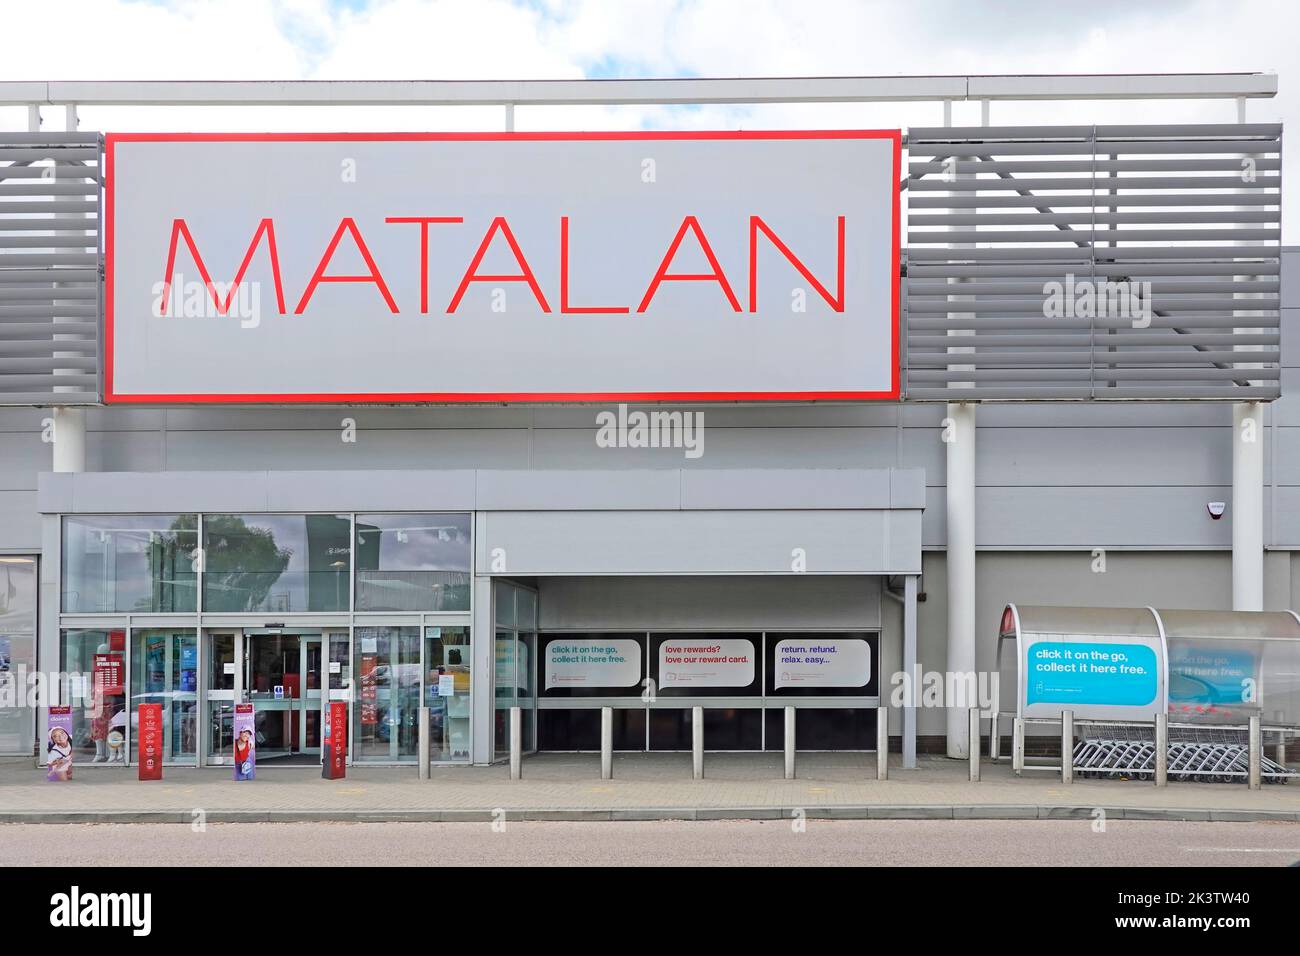 Instalaciones de Matalan en un moderno parque de tiendas, una cadena de tiendas de moda británica, una tienda de artículos para el hogar, una empresa Lakeside England, Reino Unido Foto de stock